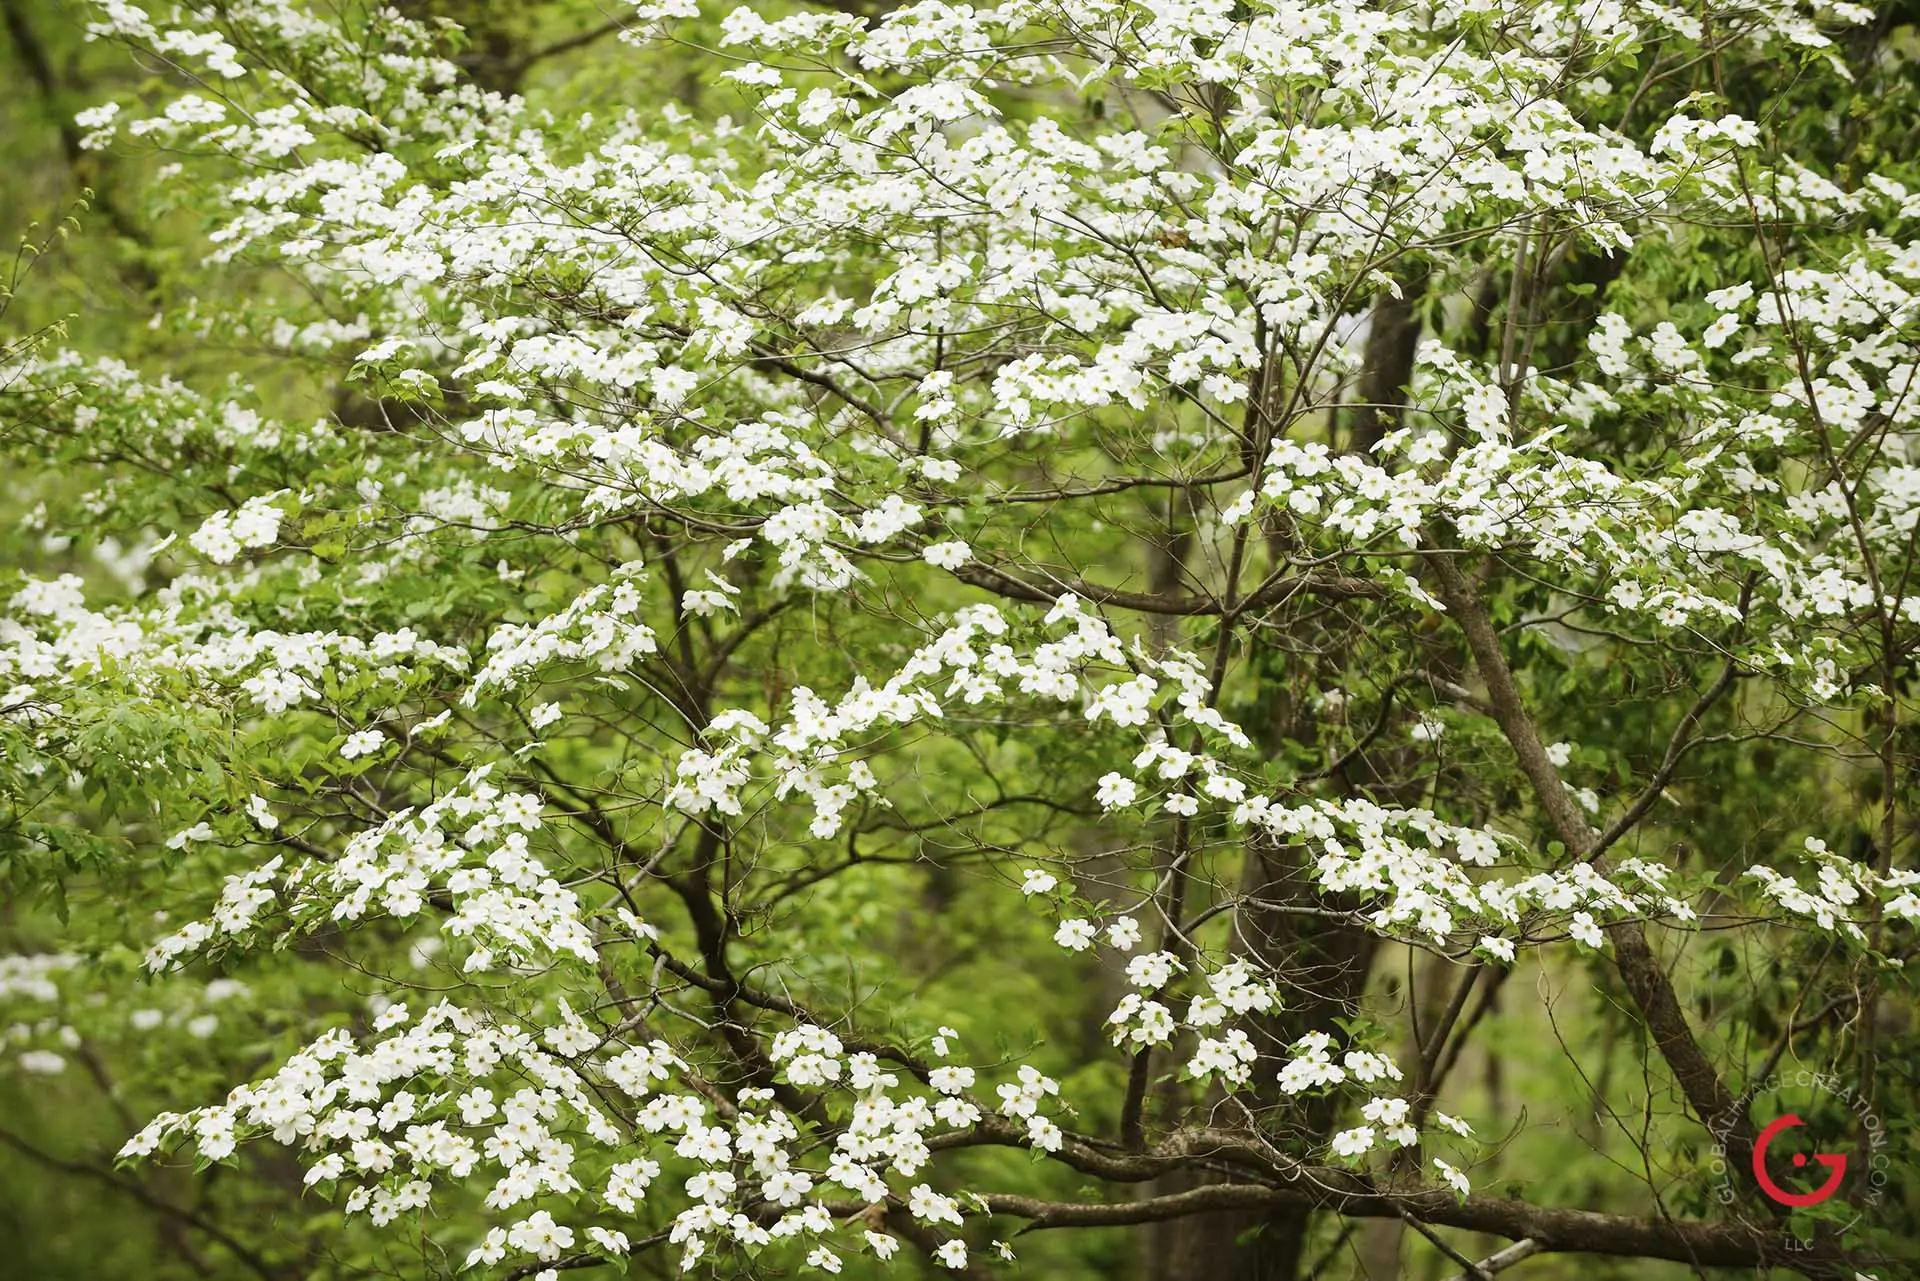 White Dogwoods in Bloom - Advertising photographers in Branson Missouri, Branson Missouri photography